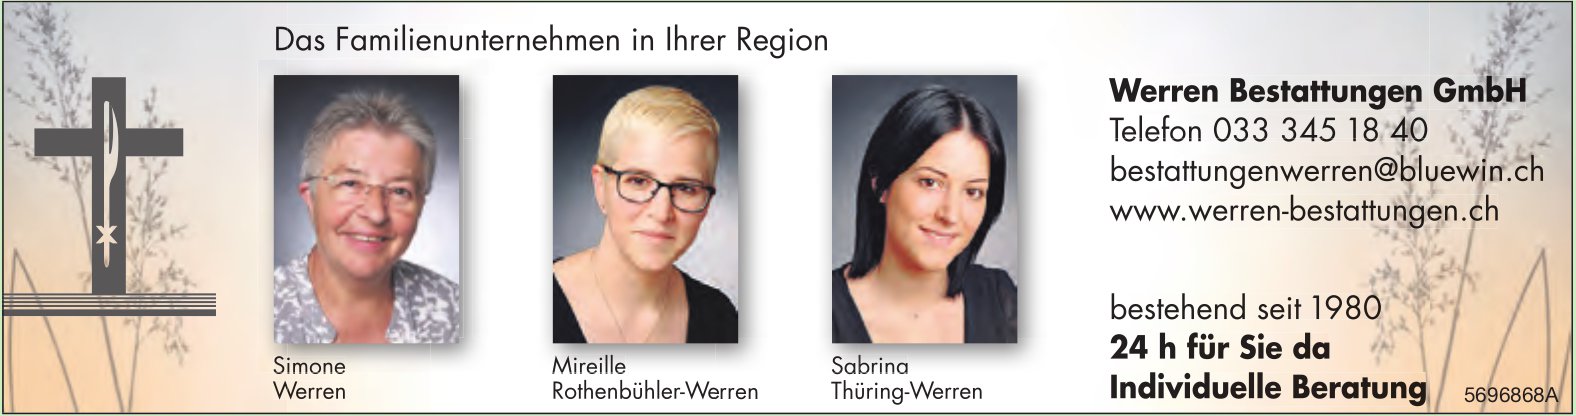 Werren Bestattungen GmbH - Das Familienunternehmen in Ihrer Region